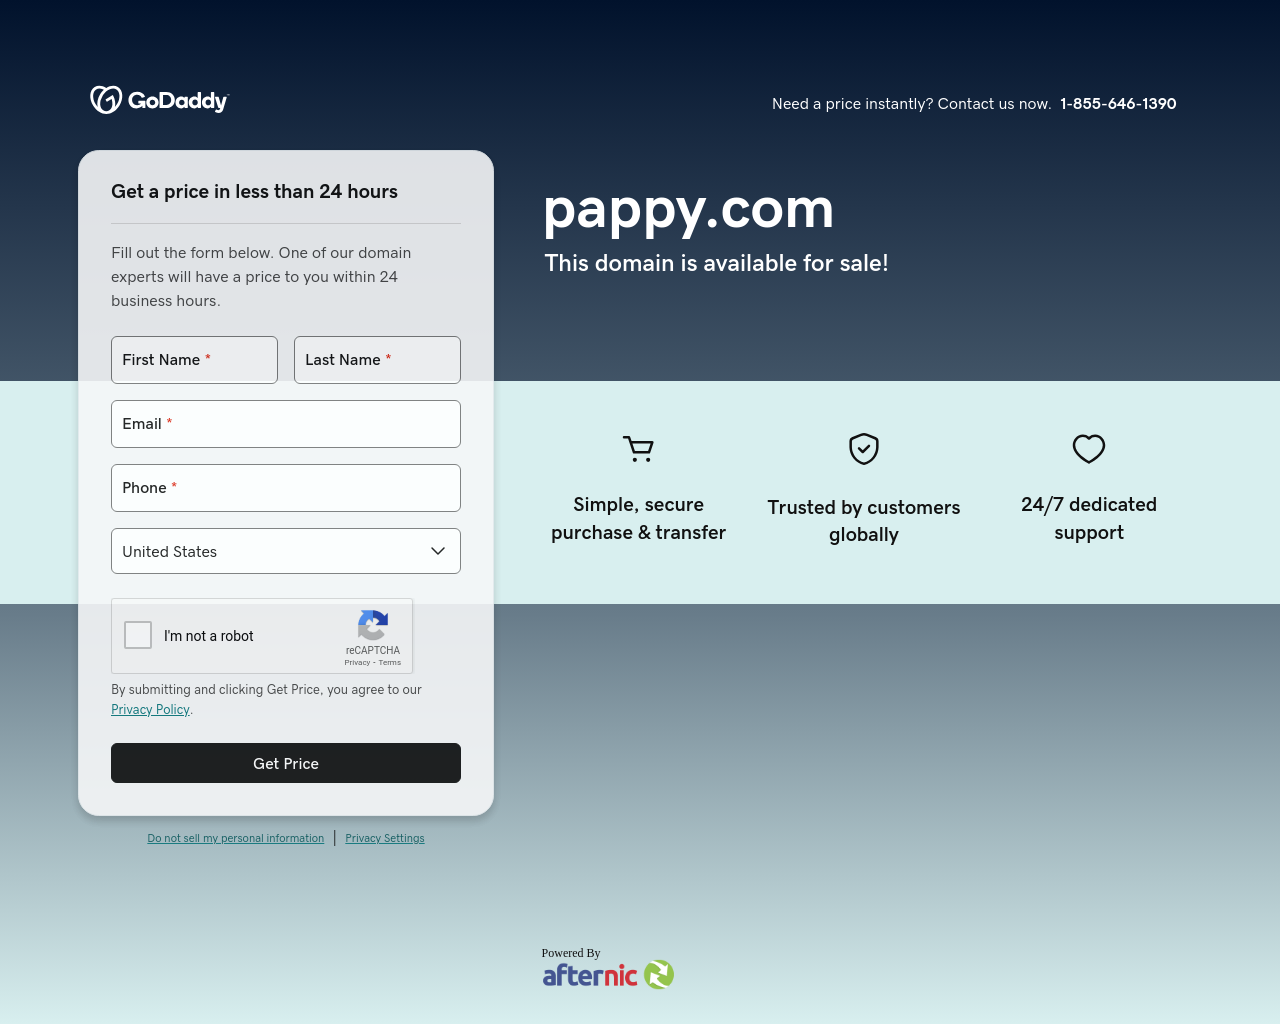 pappy.com